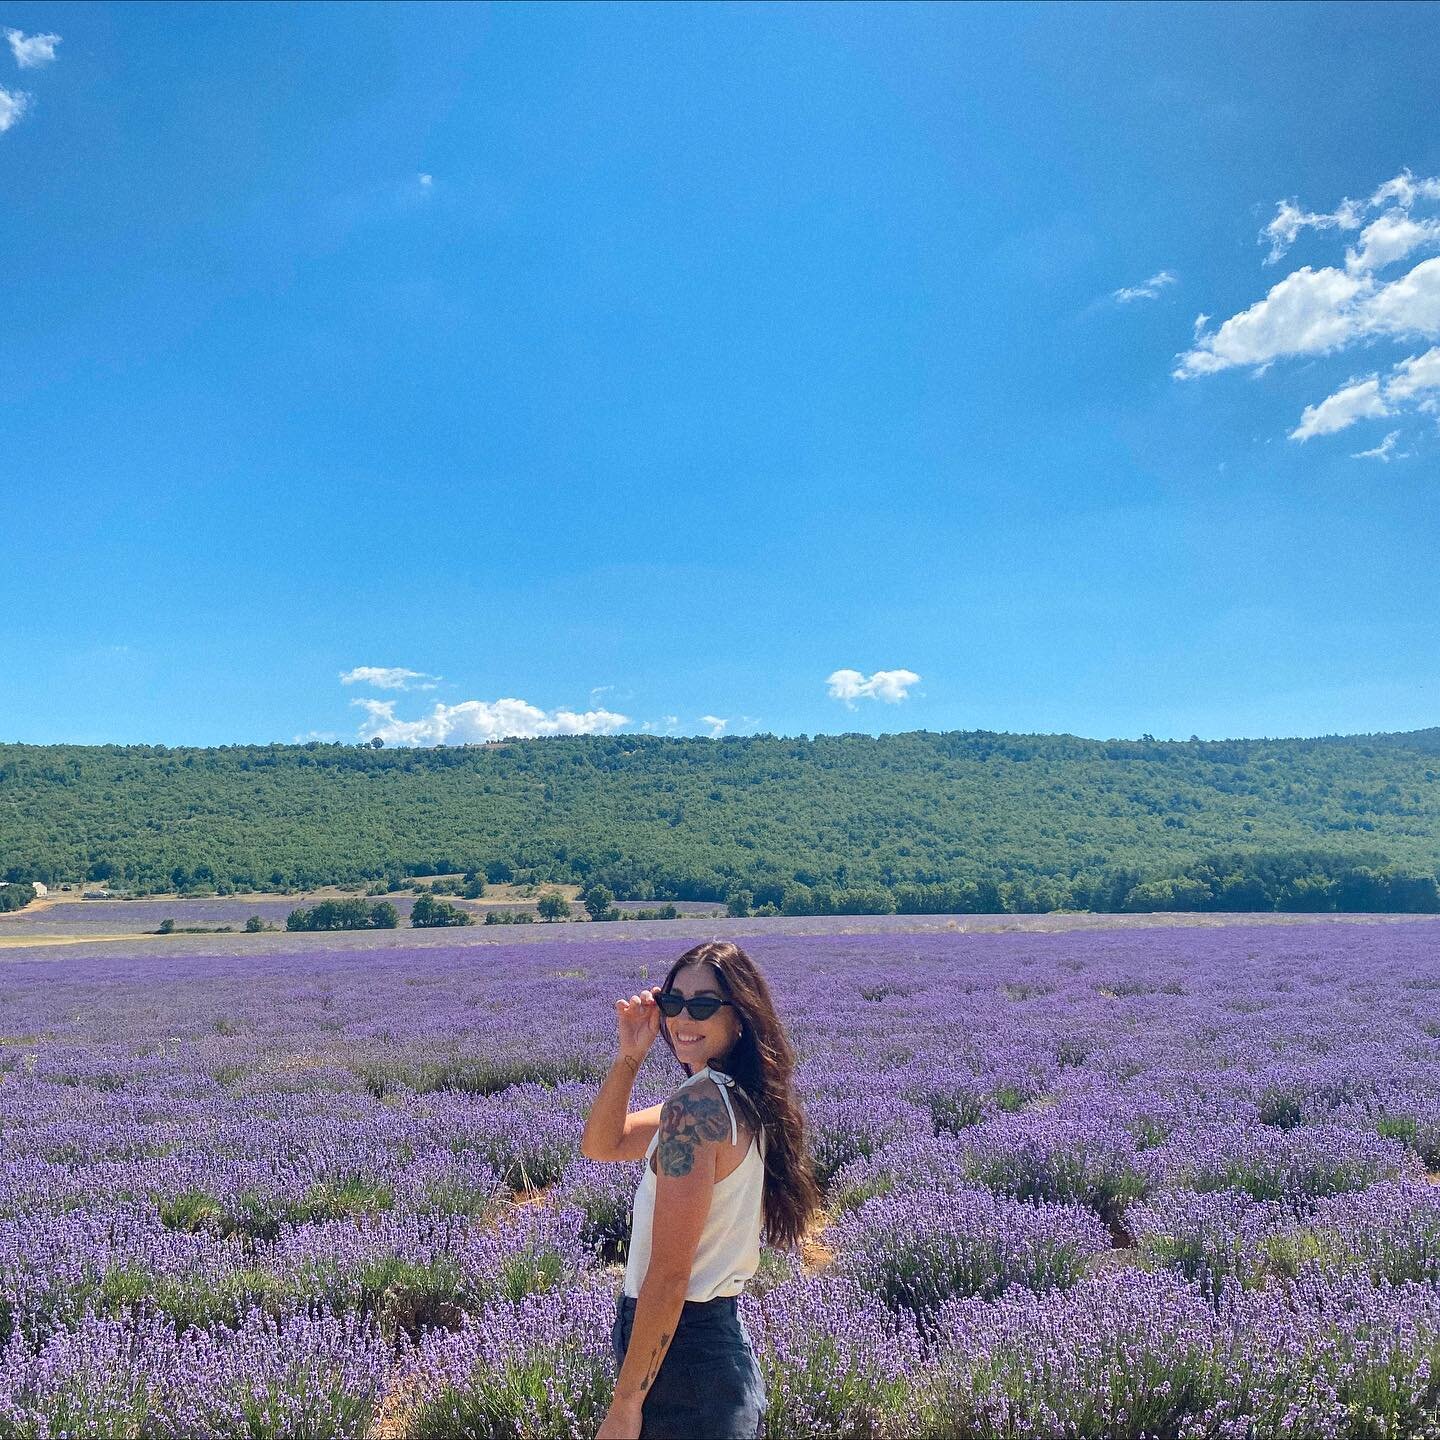 Lavender field of dreams